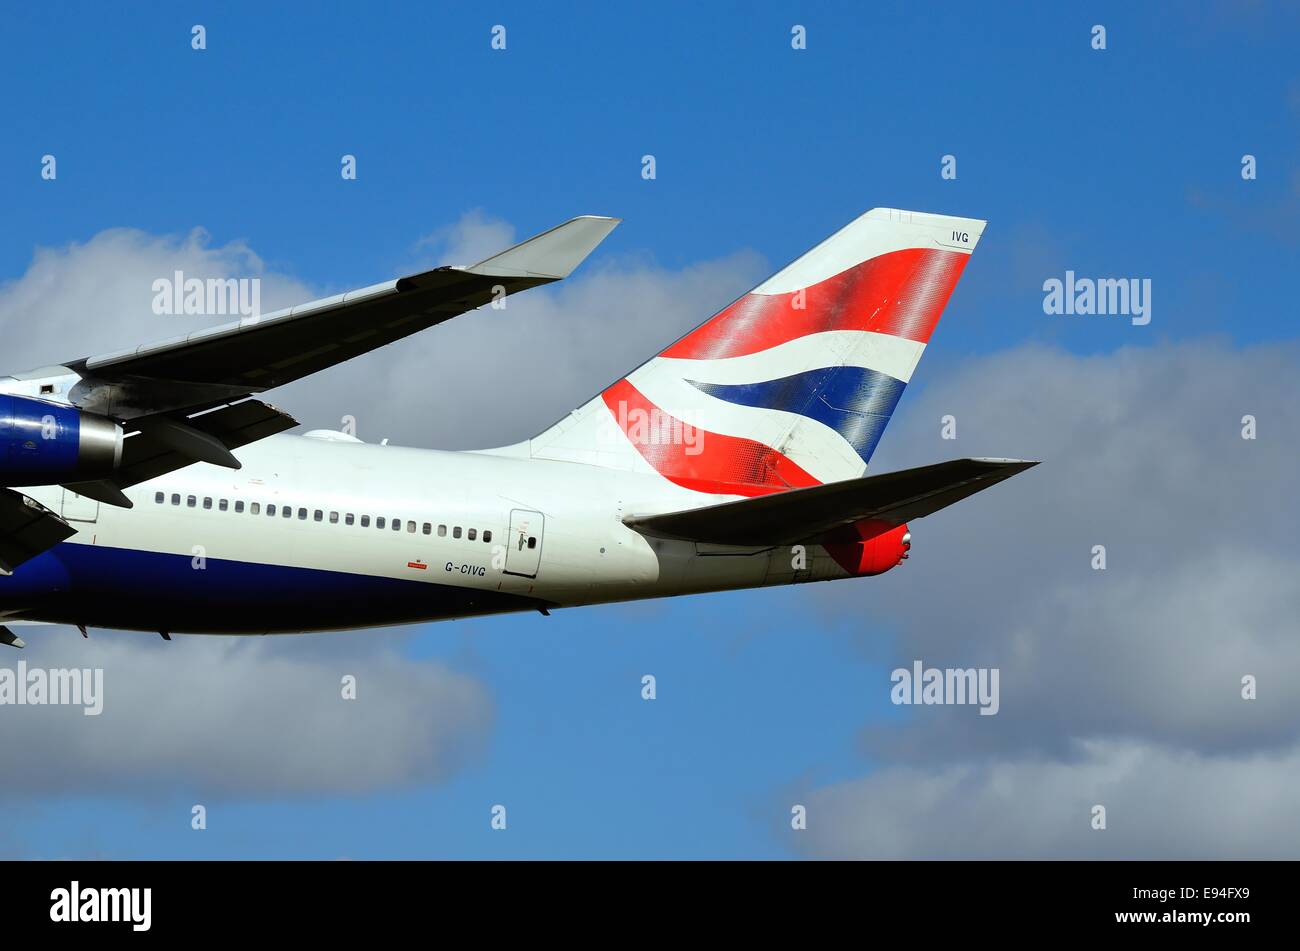 Tailplane of British Airways jumbo jet Stock Photo